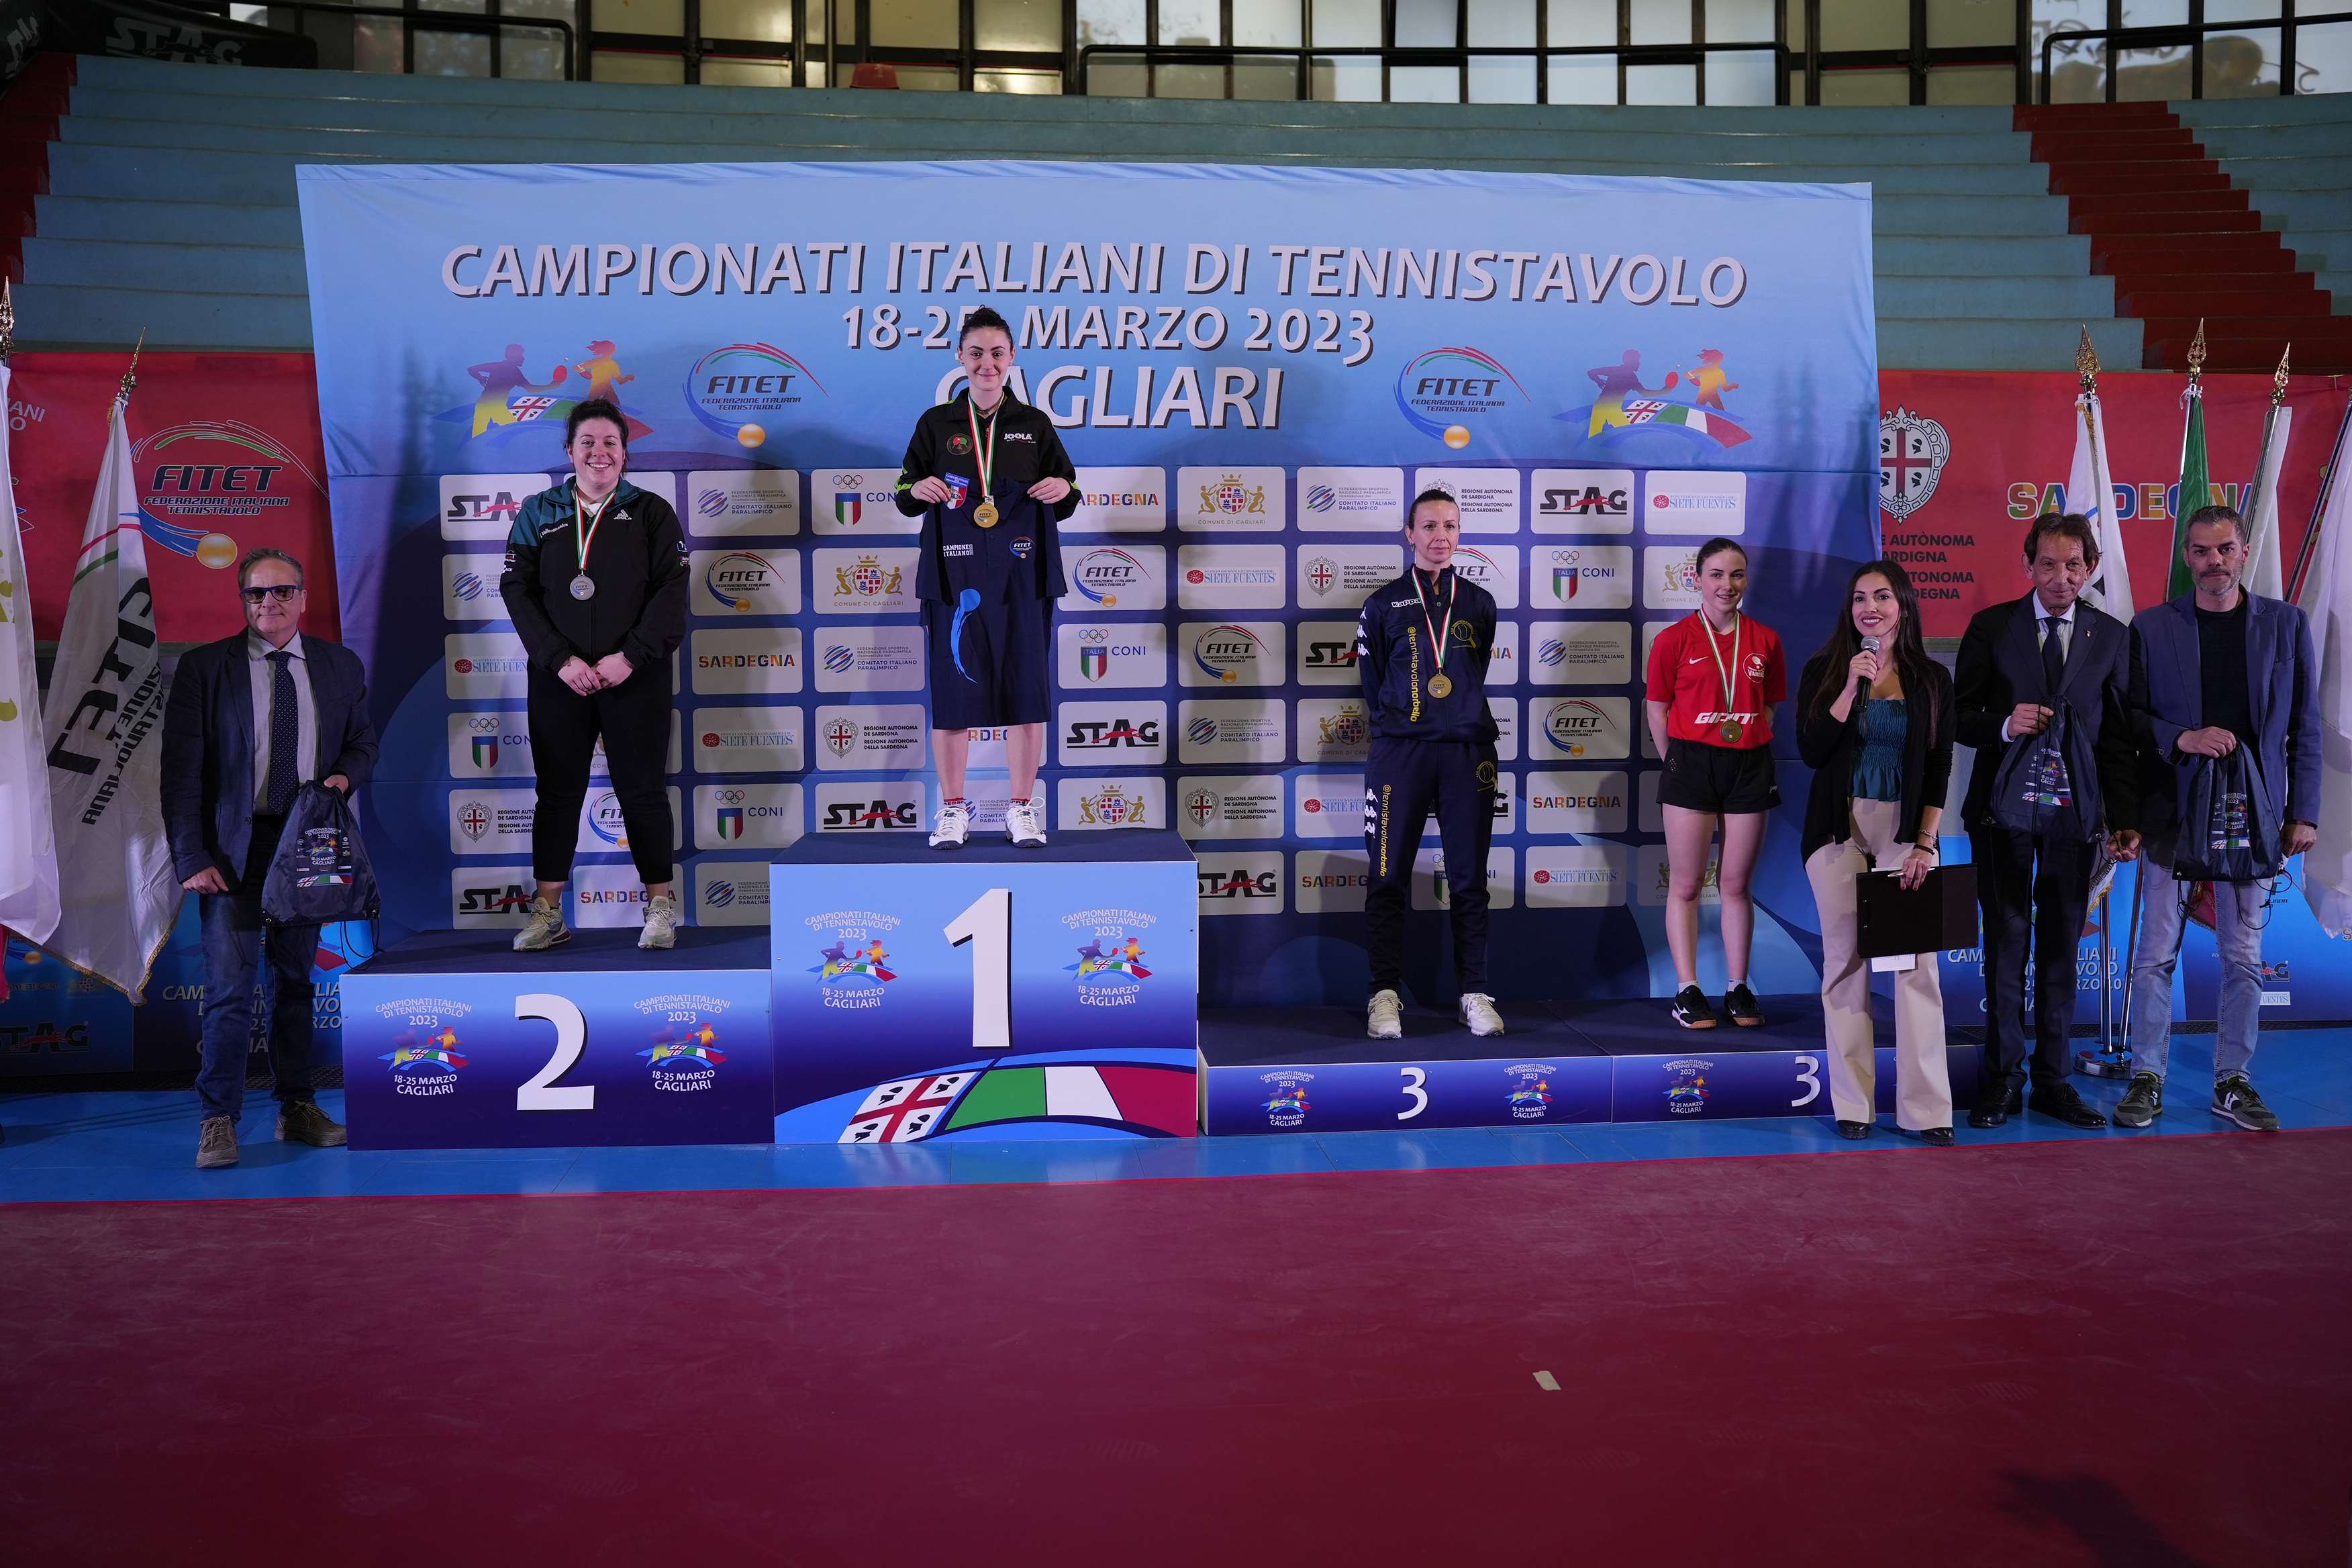 Campionati Italiani di Cagliari 2023 podio del singolare femminile di terza categoria